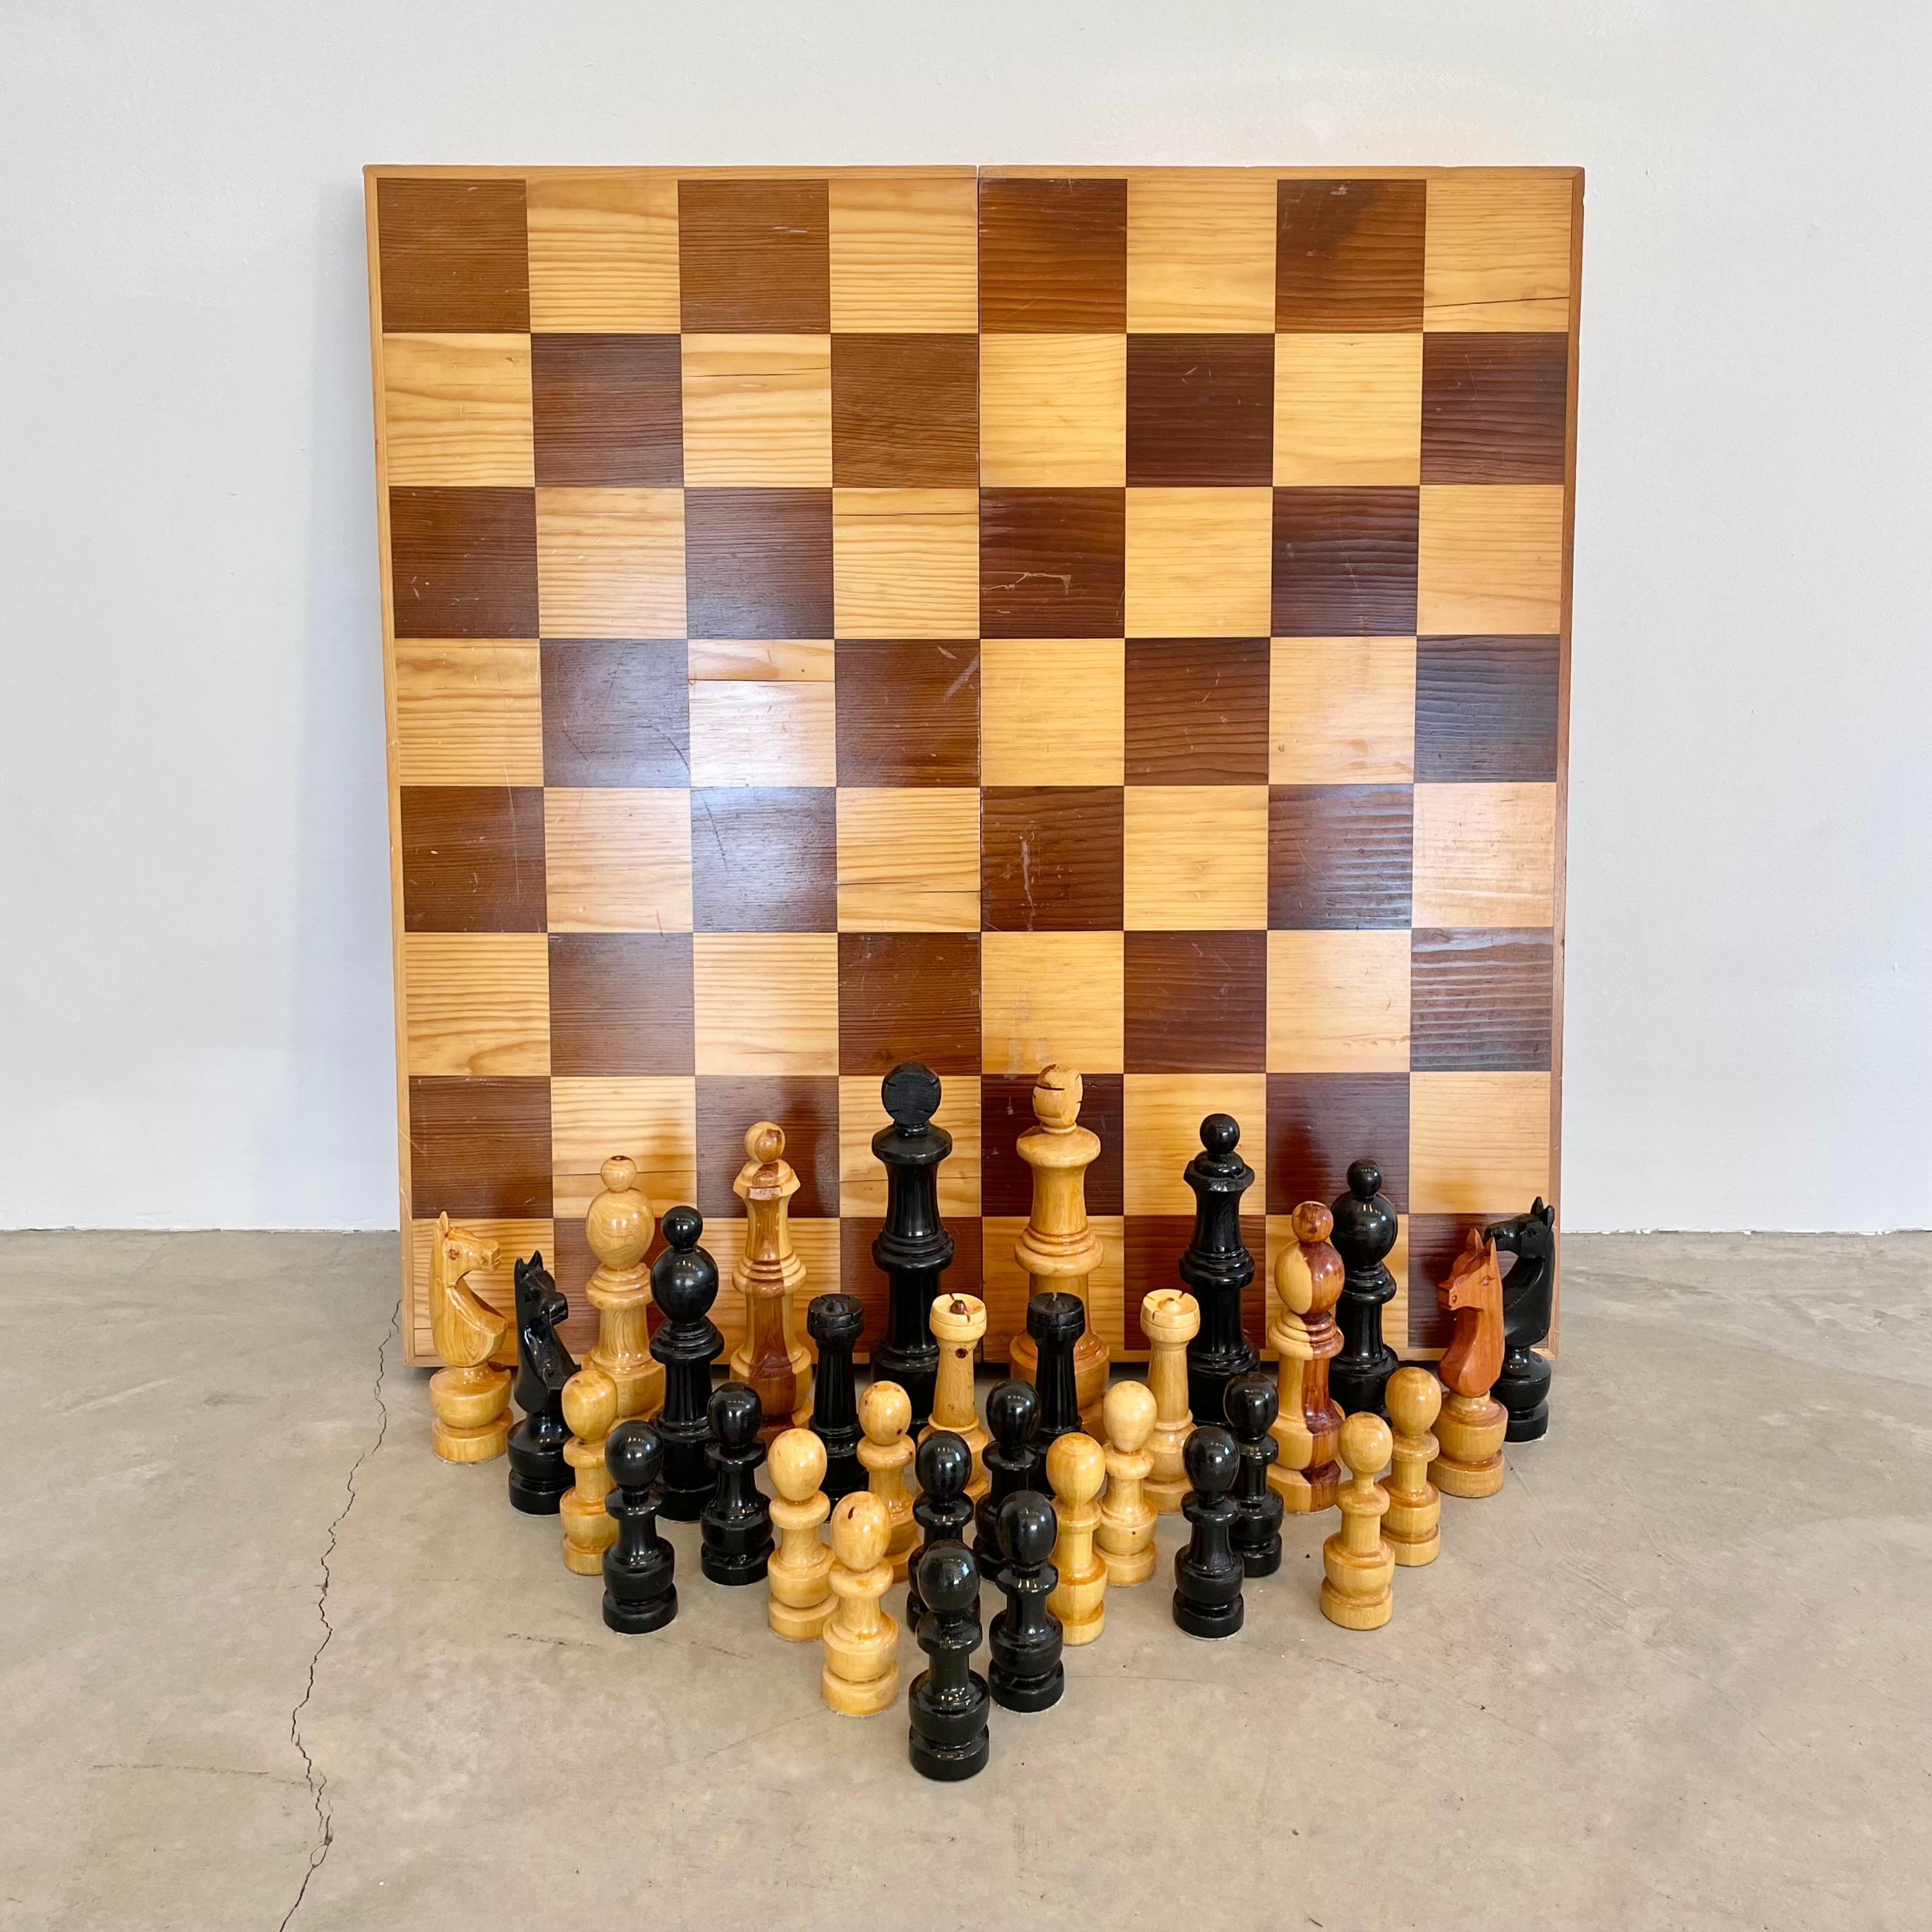 Grand jeu d'échecs pliant en bois surdimensionné fabriqué en URSS dans les années 1980. La boîte se déplie pour former un échiquier. Bon état avec une belle patine de surface sur la planche. Superbe set de table et transportable. Porté comme